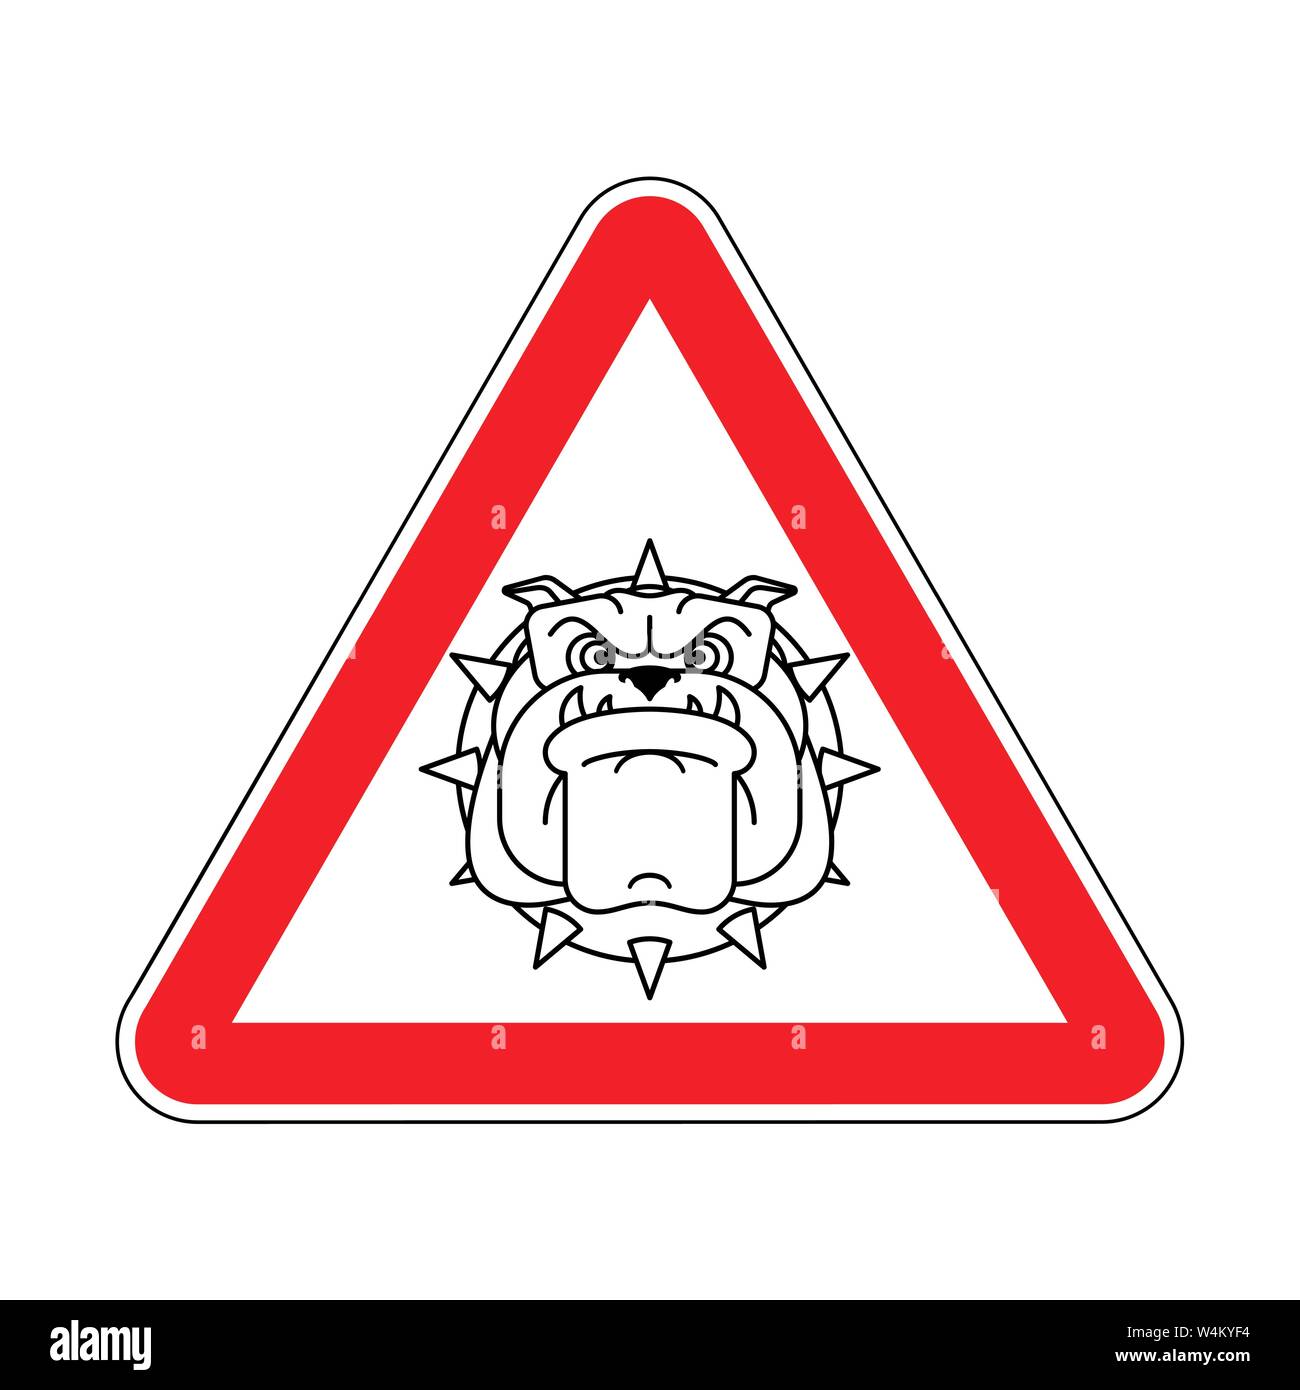 Aufmerksamkeit wütend Hund. Warnung Red Road Sign. Achtung Wachhund Stock Vektor